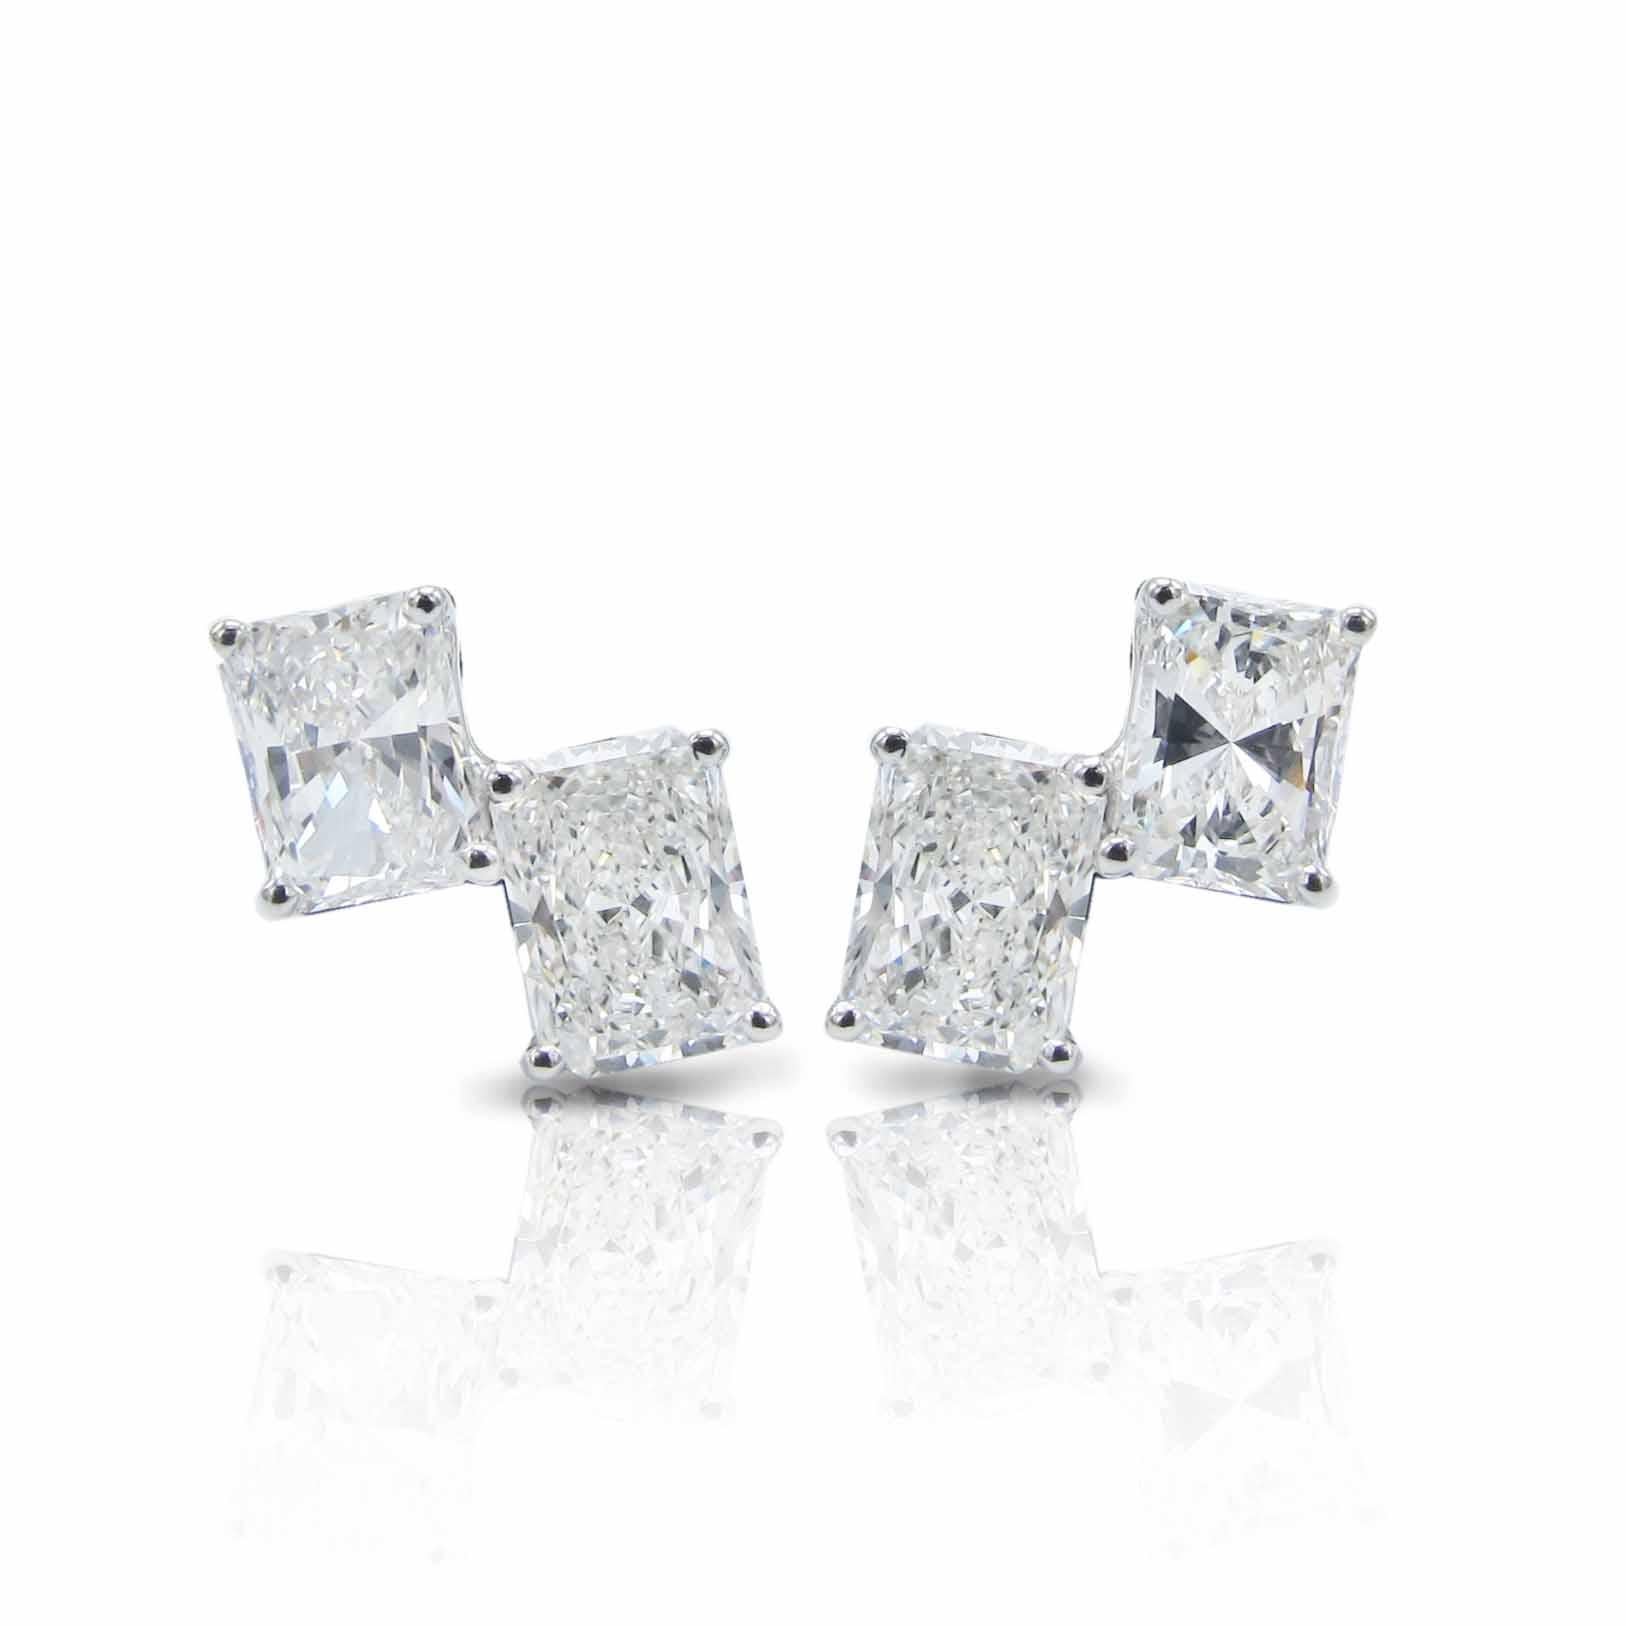 0.5 ct diamond stud earrings